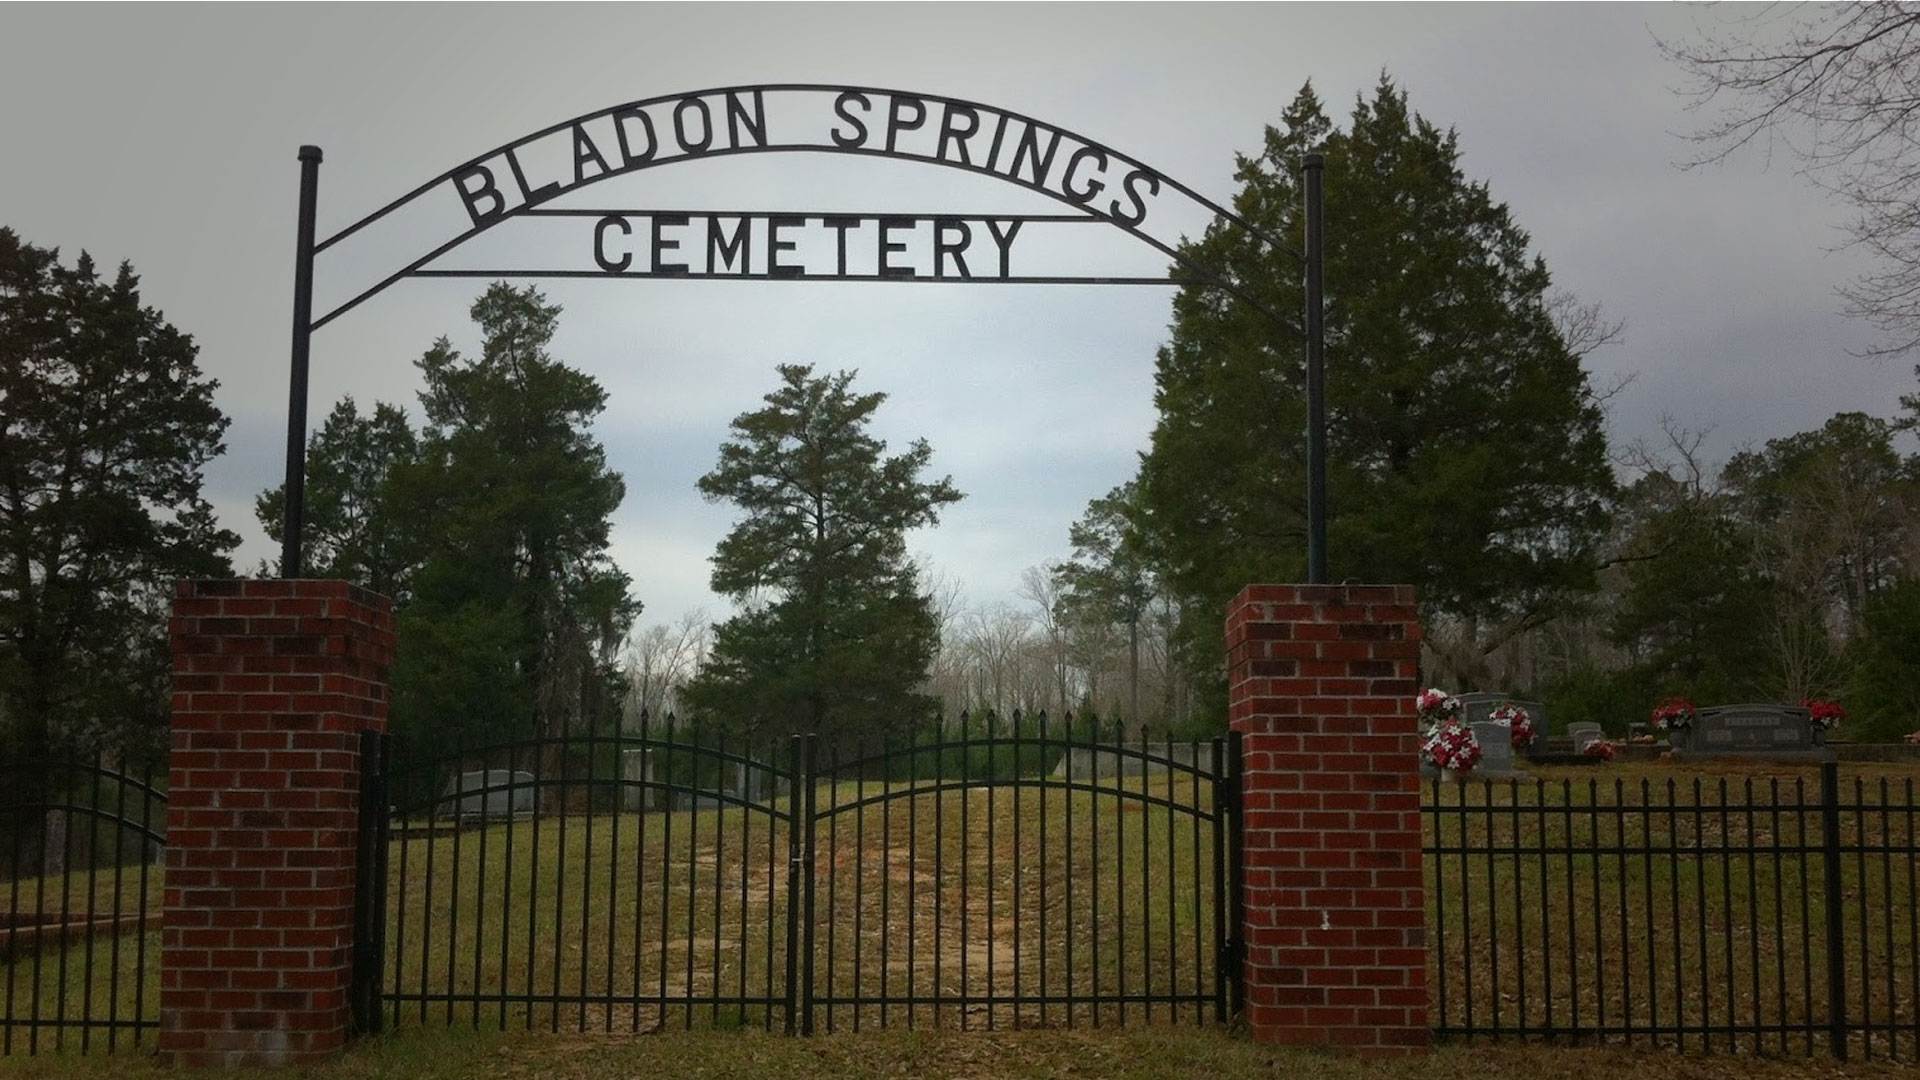 Bladon Springs Cemetery